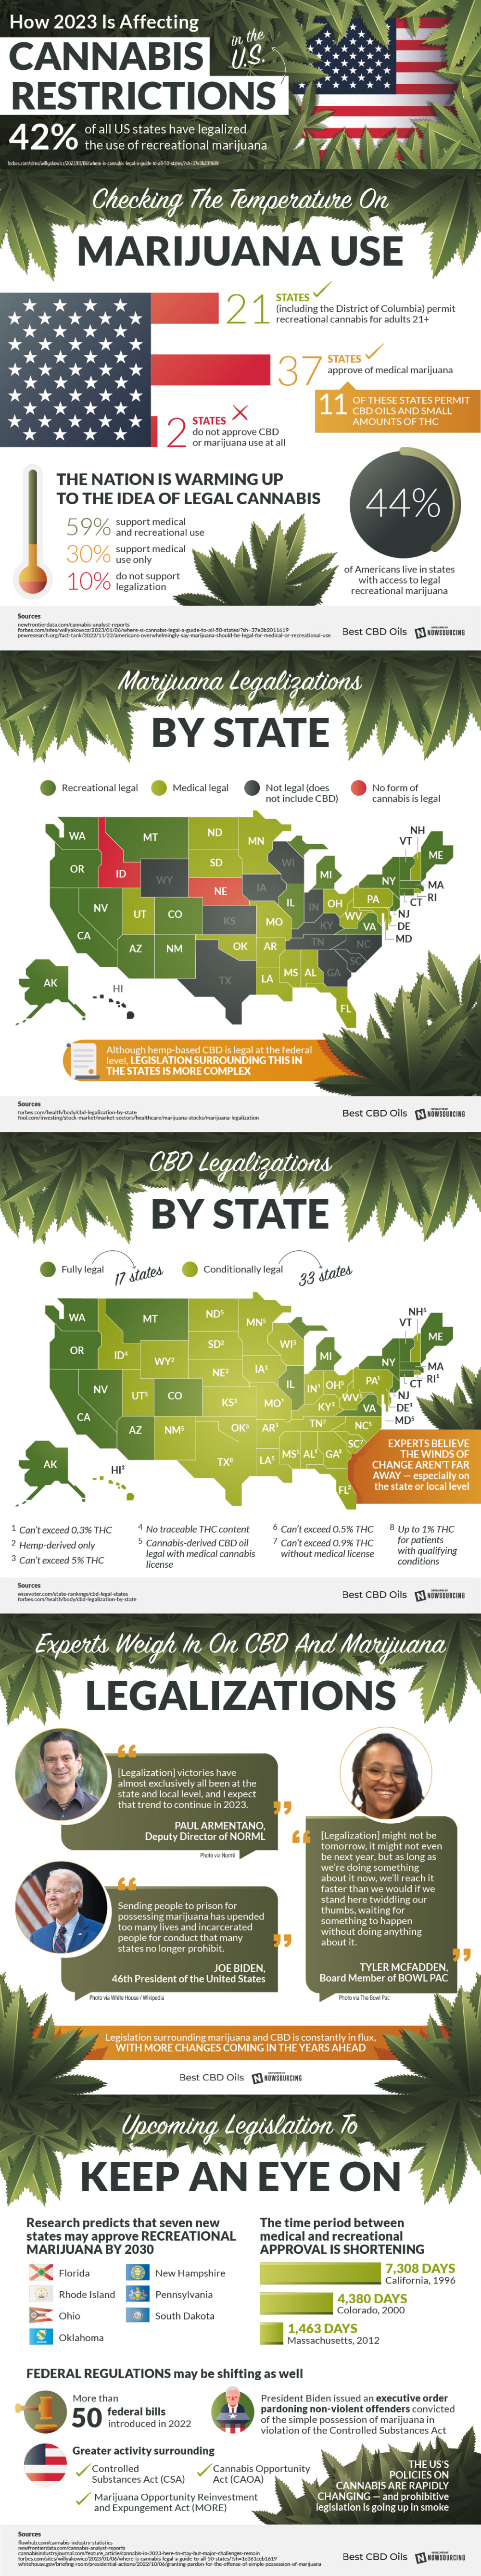 Cannabis Legislation by State